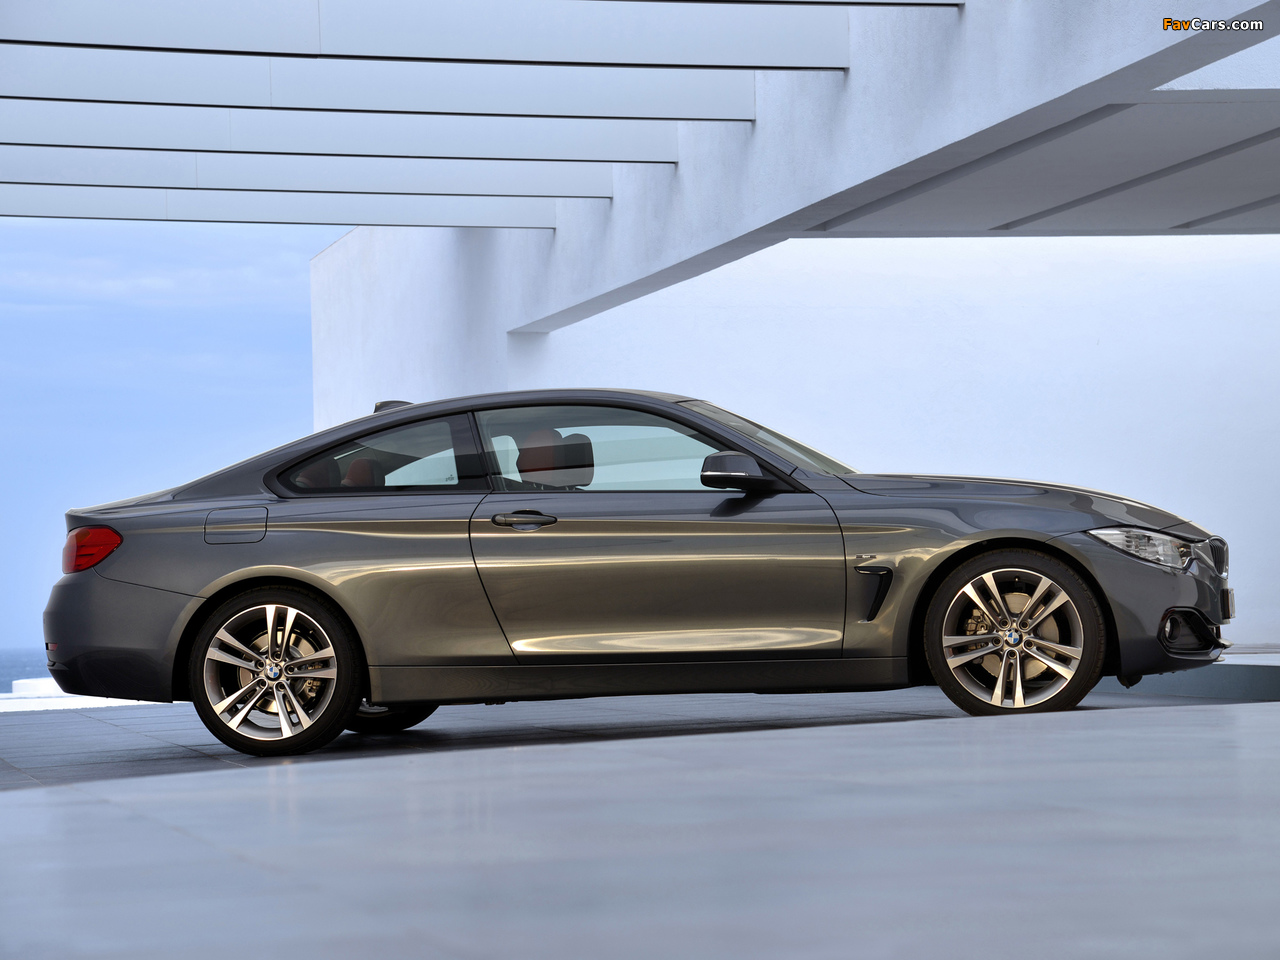 BMW 420d Coupé Sport Line (F32) 2013 photos (1280 x 960)